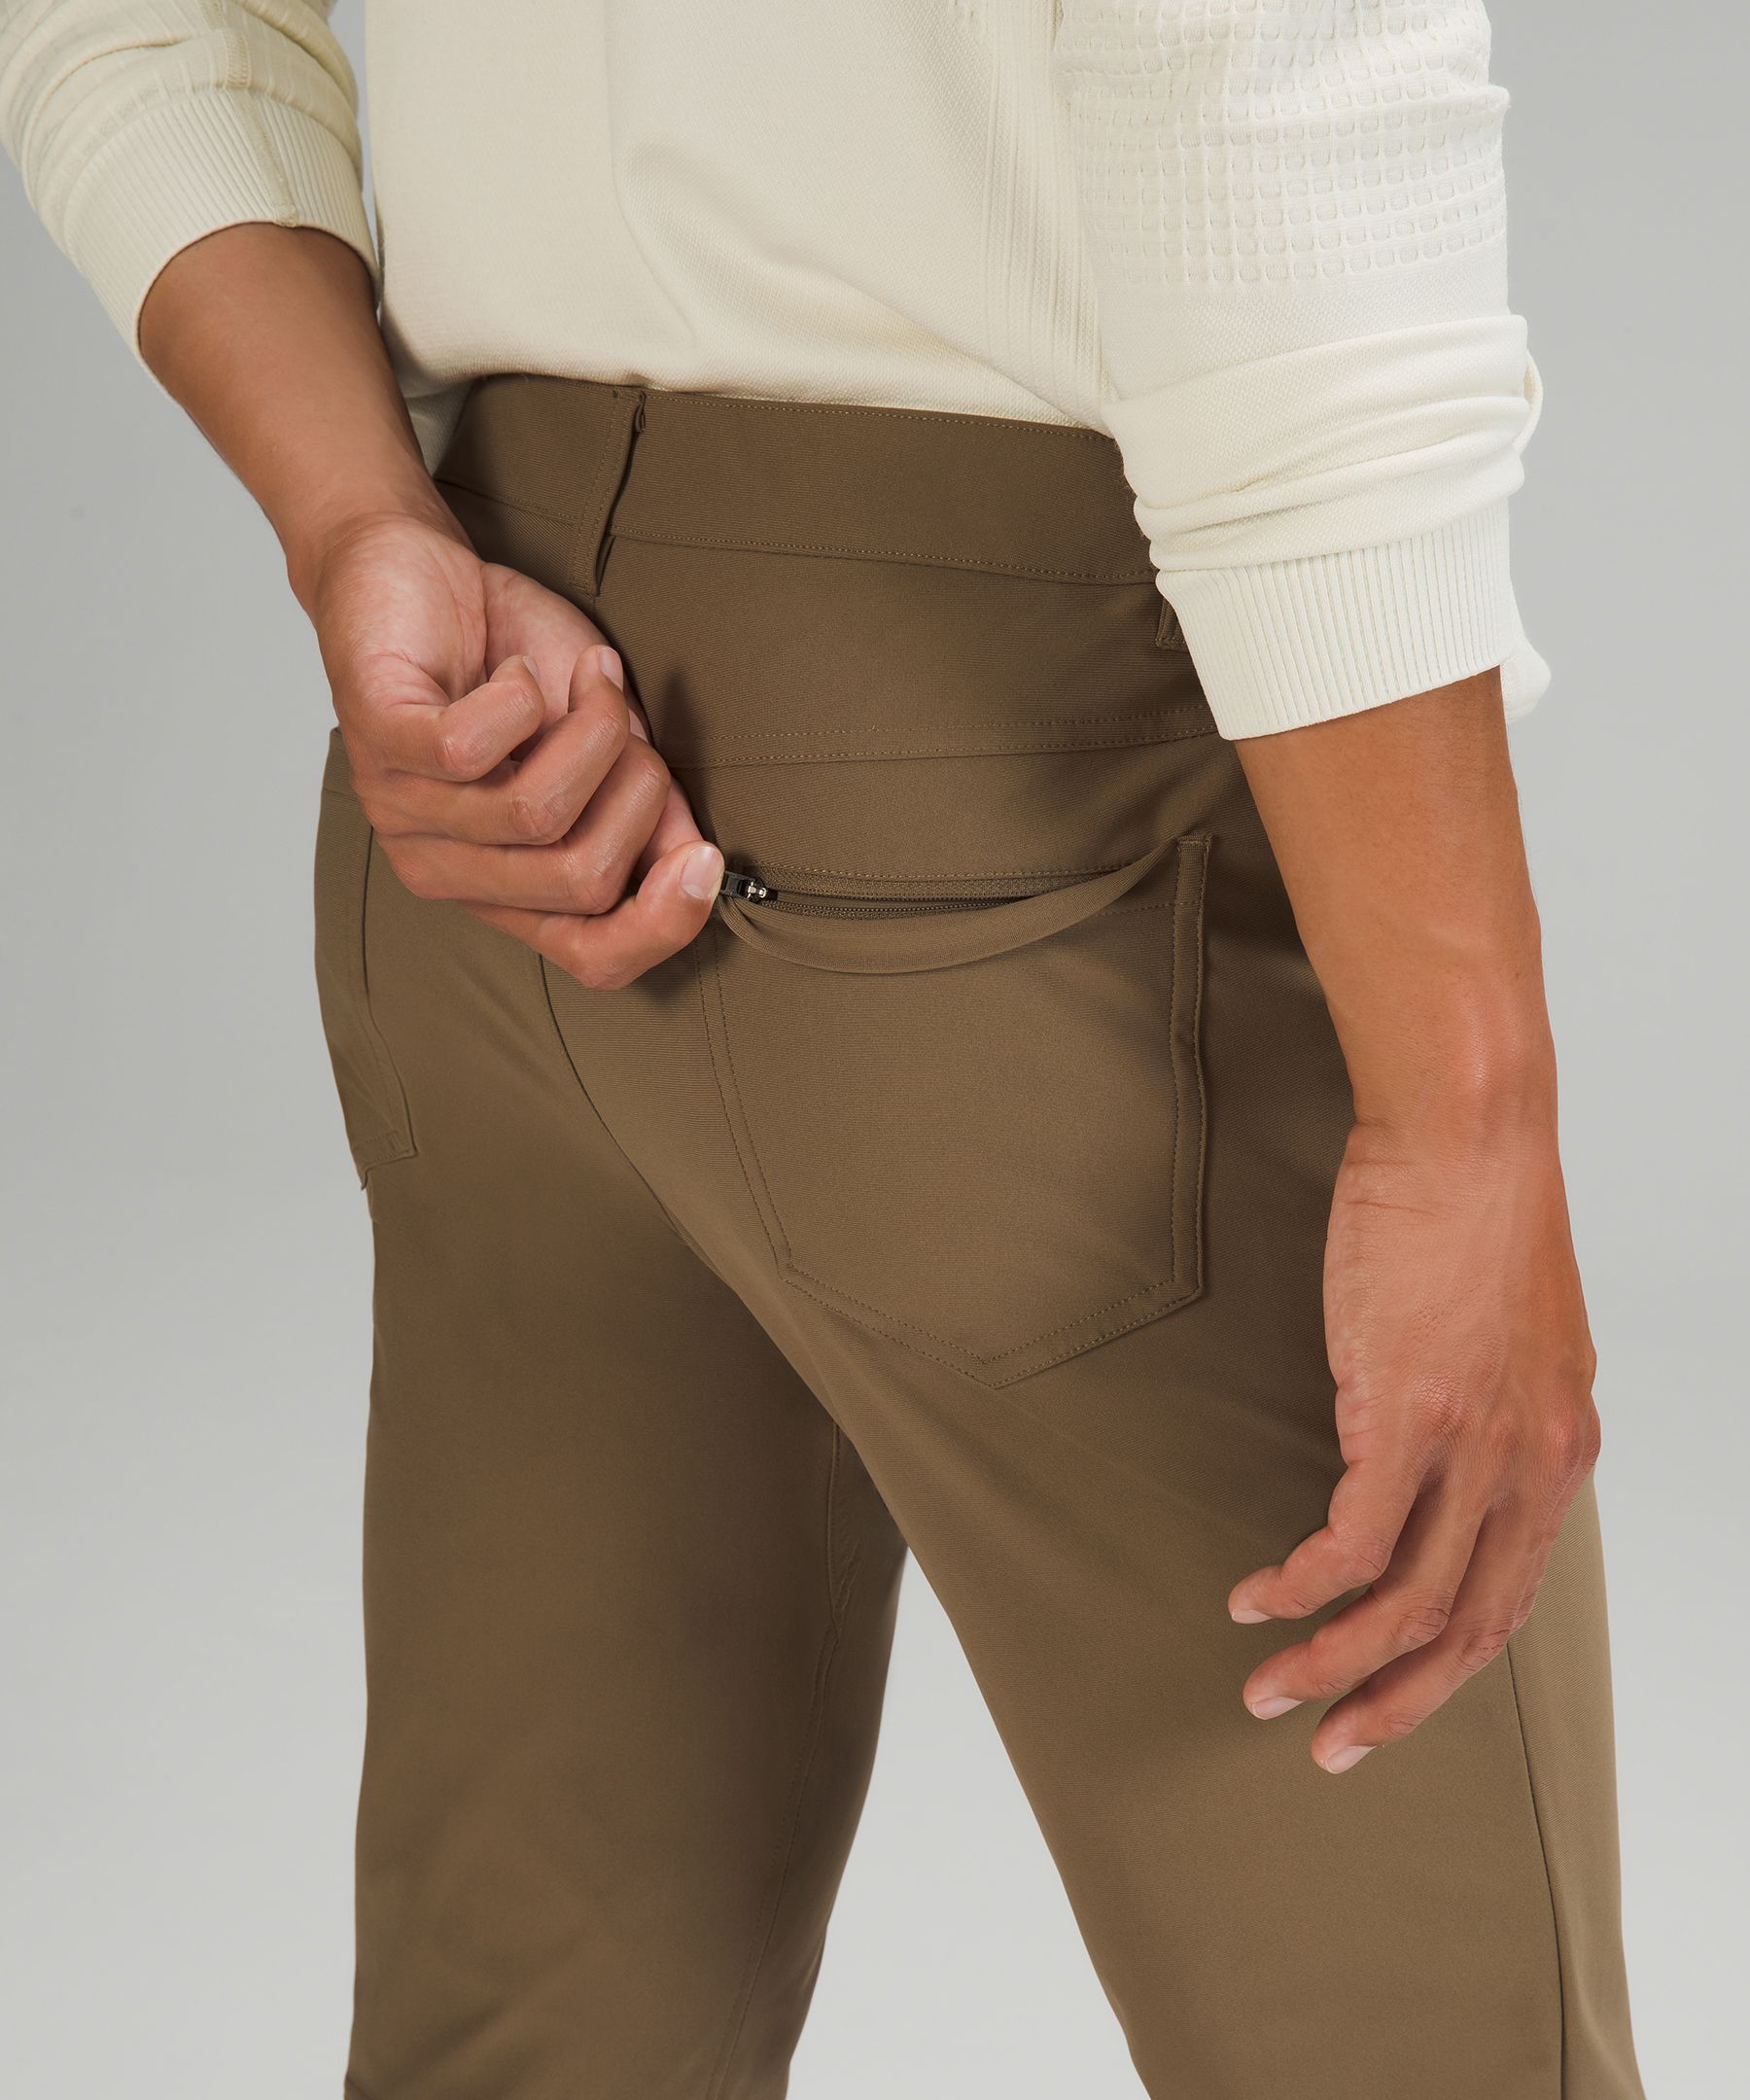 Lululemon athletica ABC Classic-Fit 5 Pocket Pant 28L *Warpstreme, Men's  Trousers